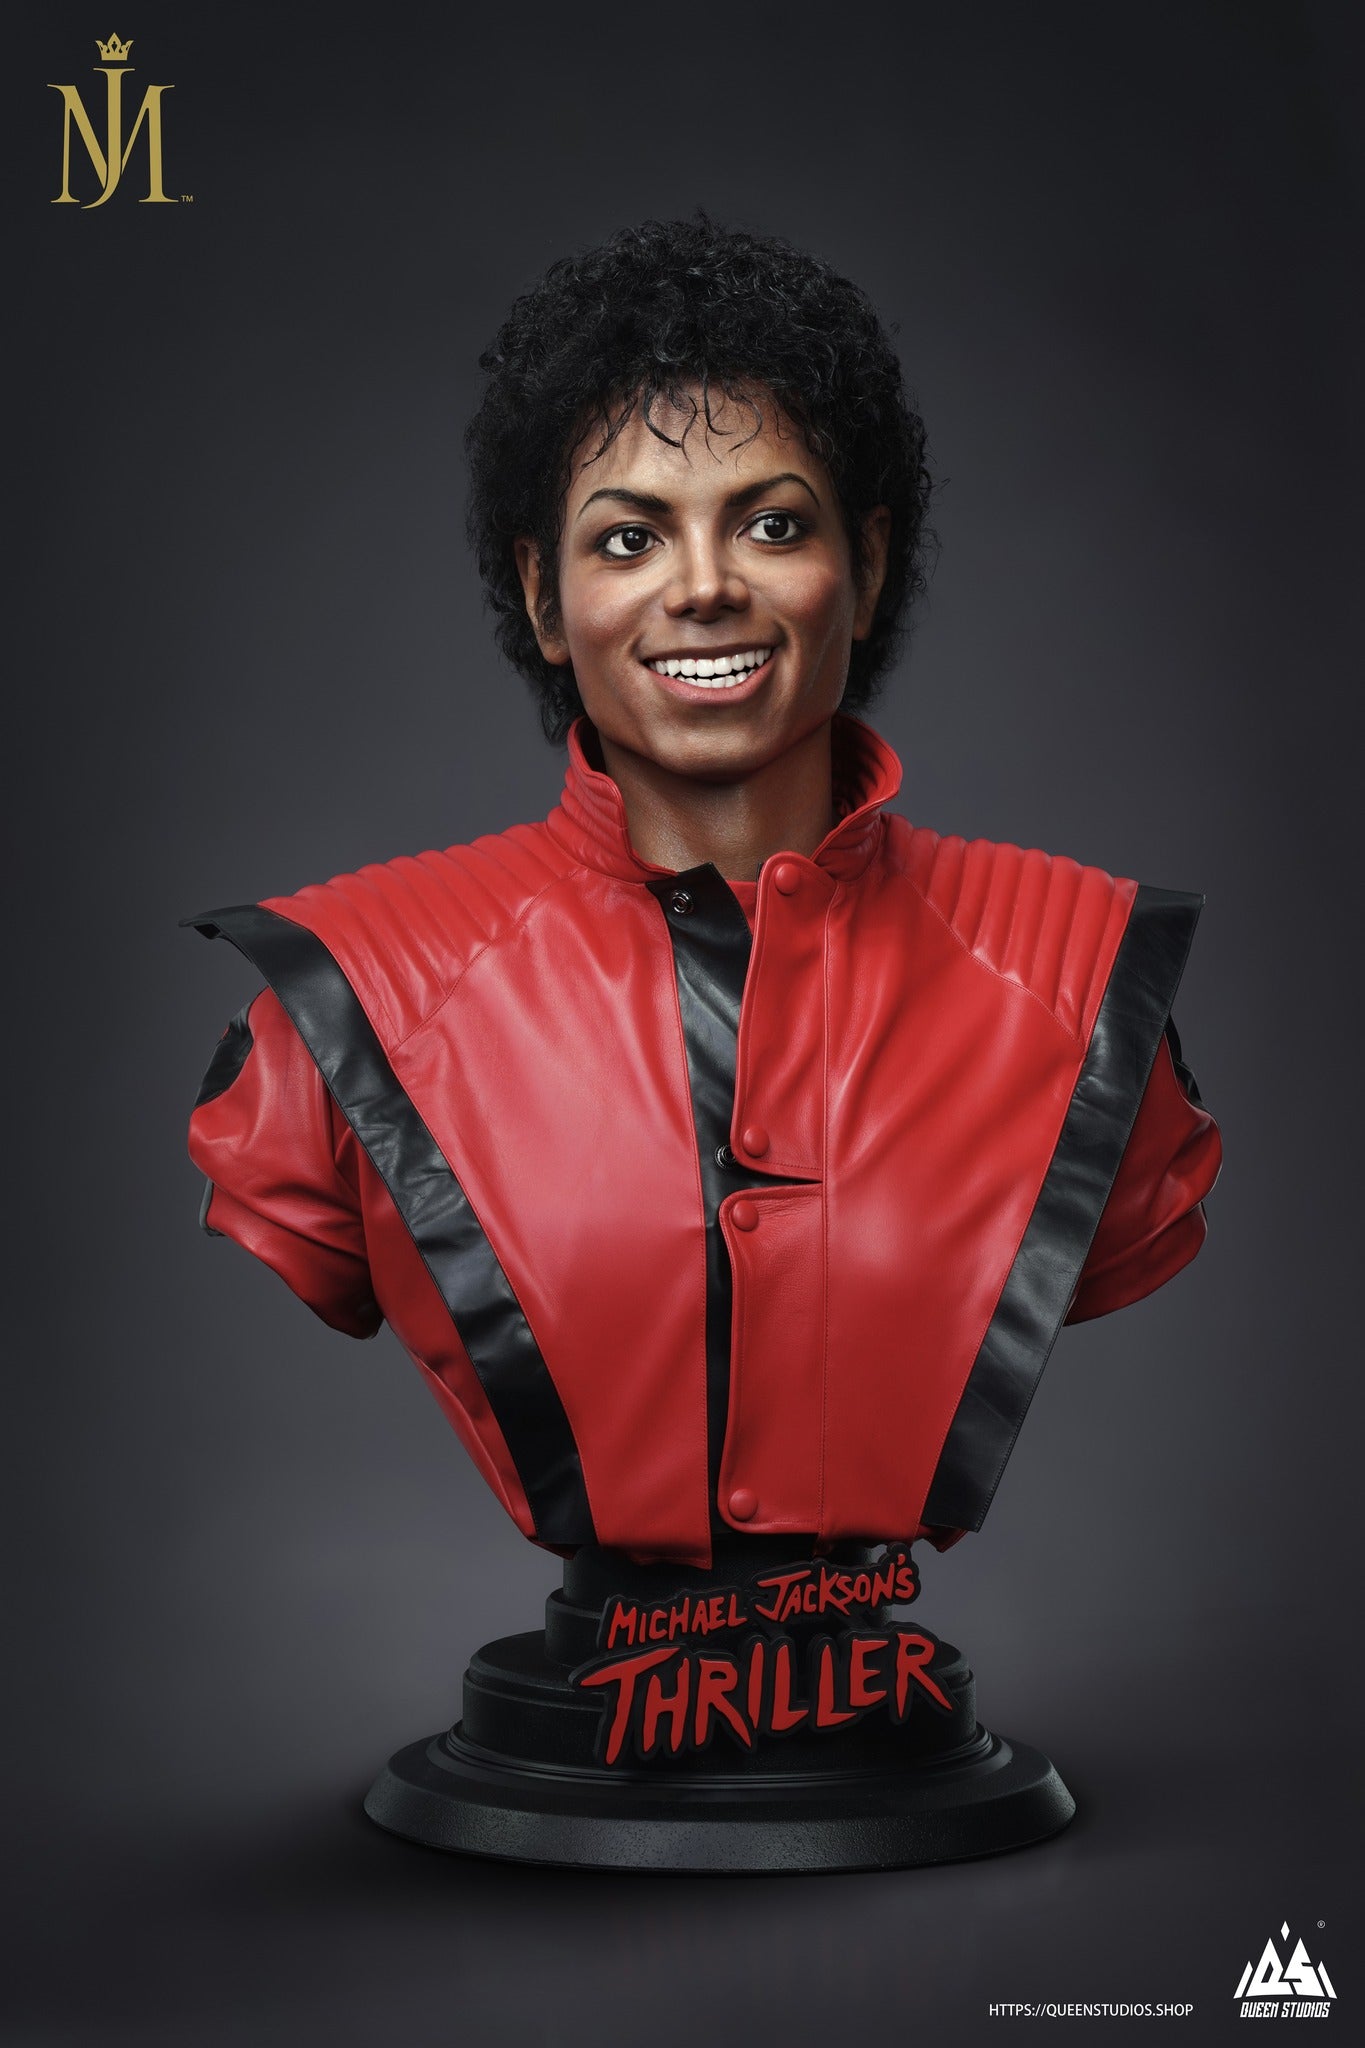 Michael Jackson Thriller Life-Size Bust - Spec Fiction Shop